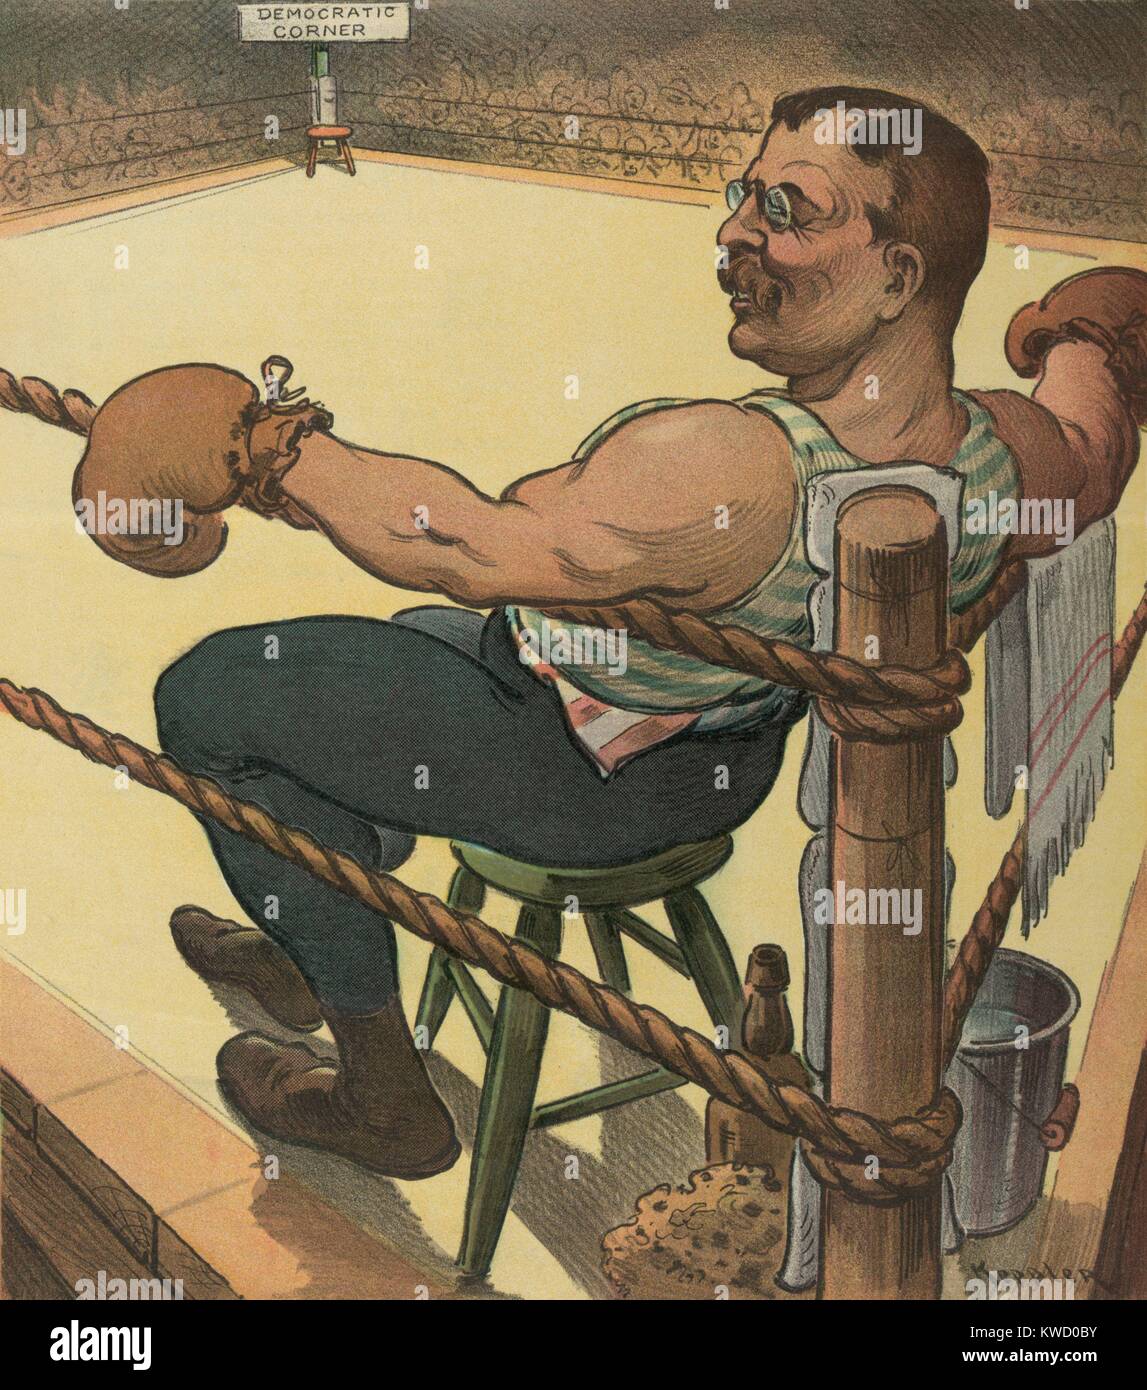 TERRIBLE TEDDY espera lo desconocido, dibujos animados en el puck Magazine, junio 1, 1904. El Presidente republicano Theodore Roosevelt como un boxeador, esperando a su contrincante demócrata en las elecciones de 1904 (BSLOC 2017 6 24) Foto de stock